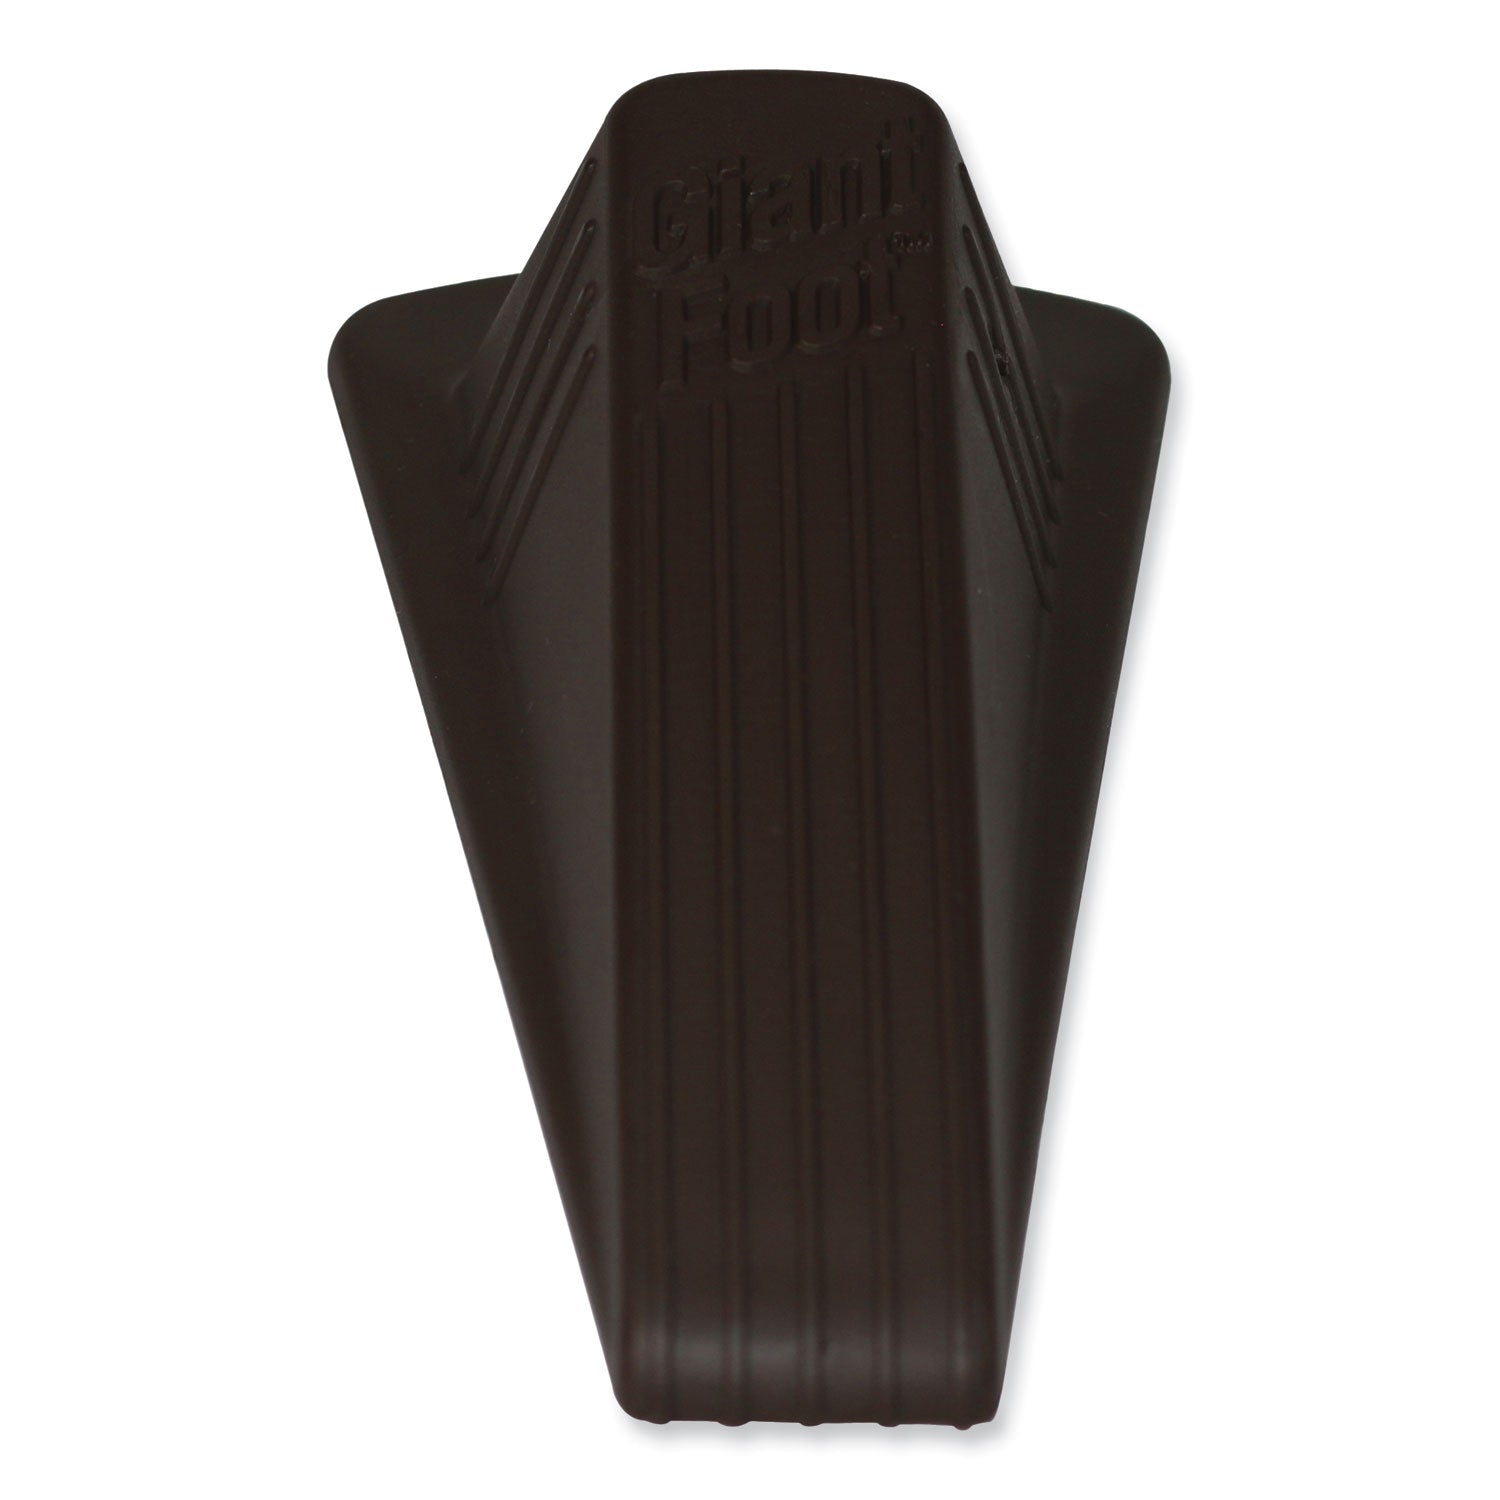 Giant Foot Doorstop, No-Slip Rubber Wedge, 3.5w x 6.75d x 2h, Brown, 2/Pack - 